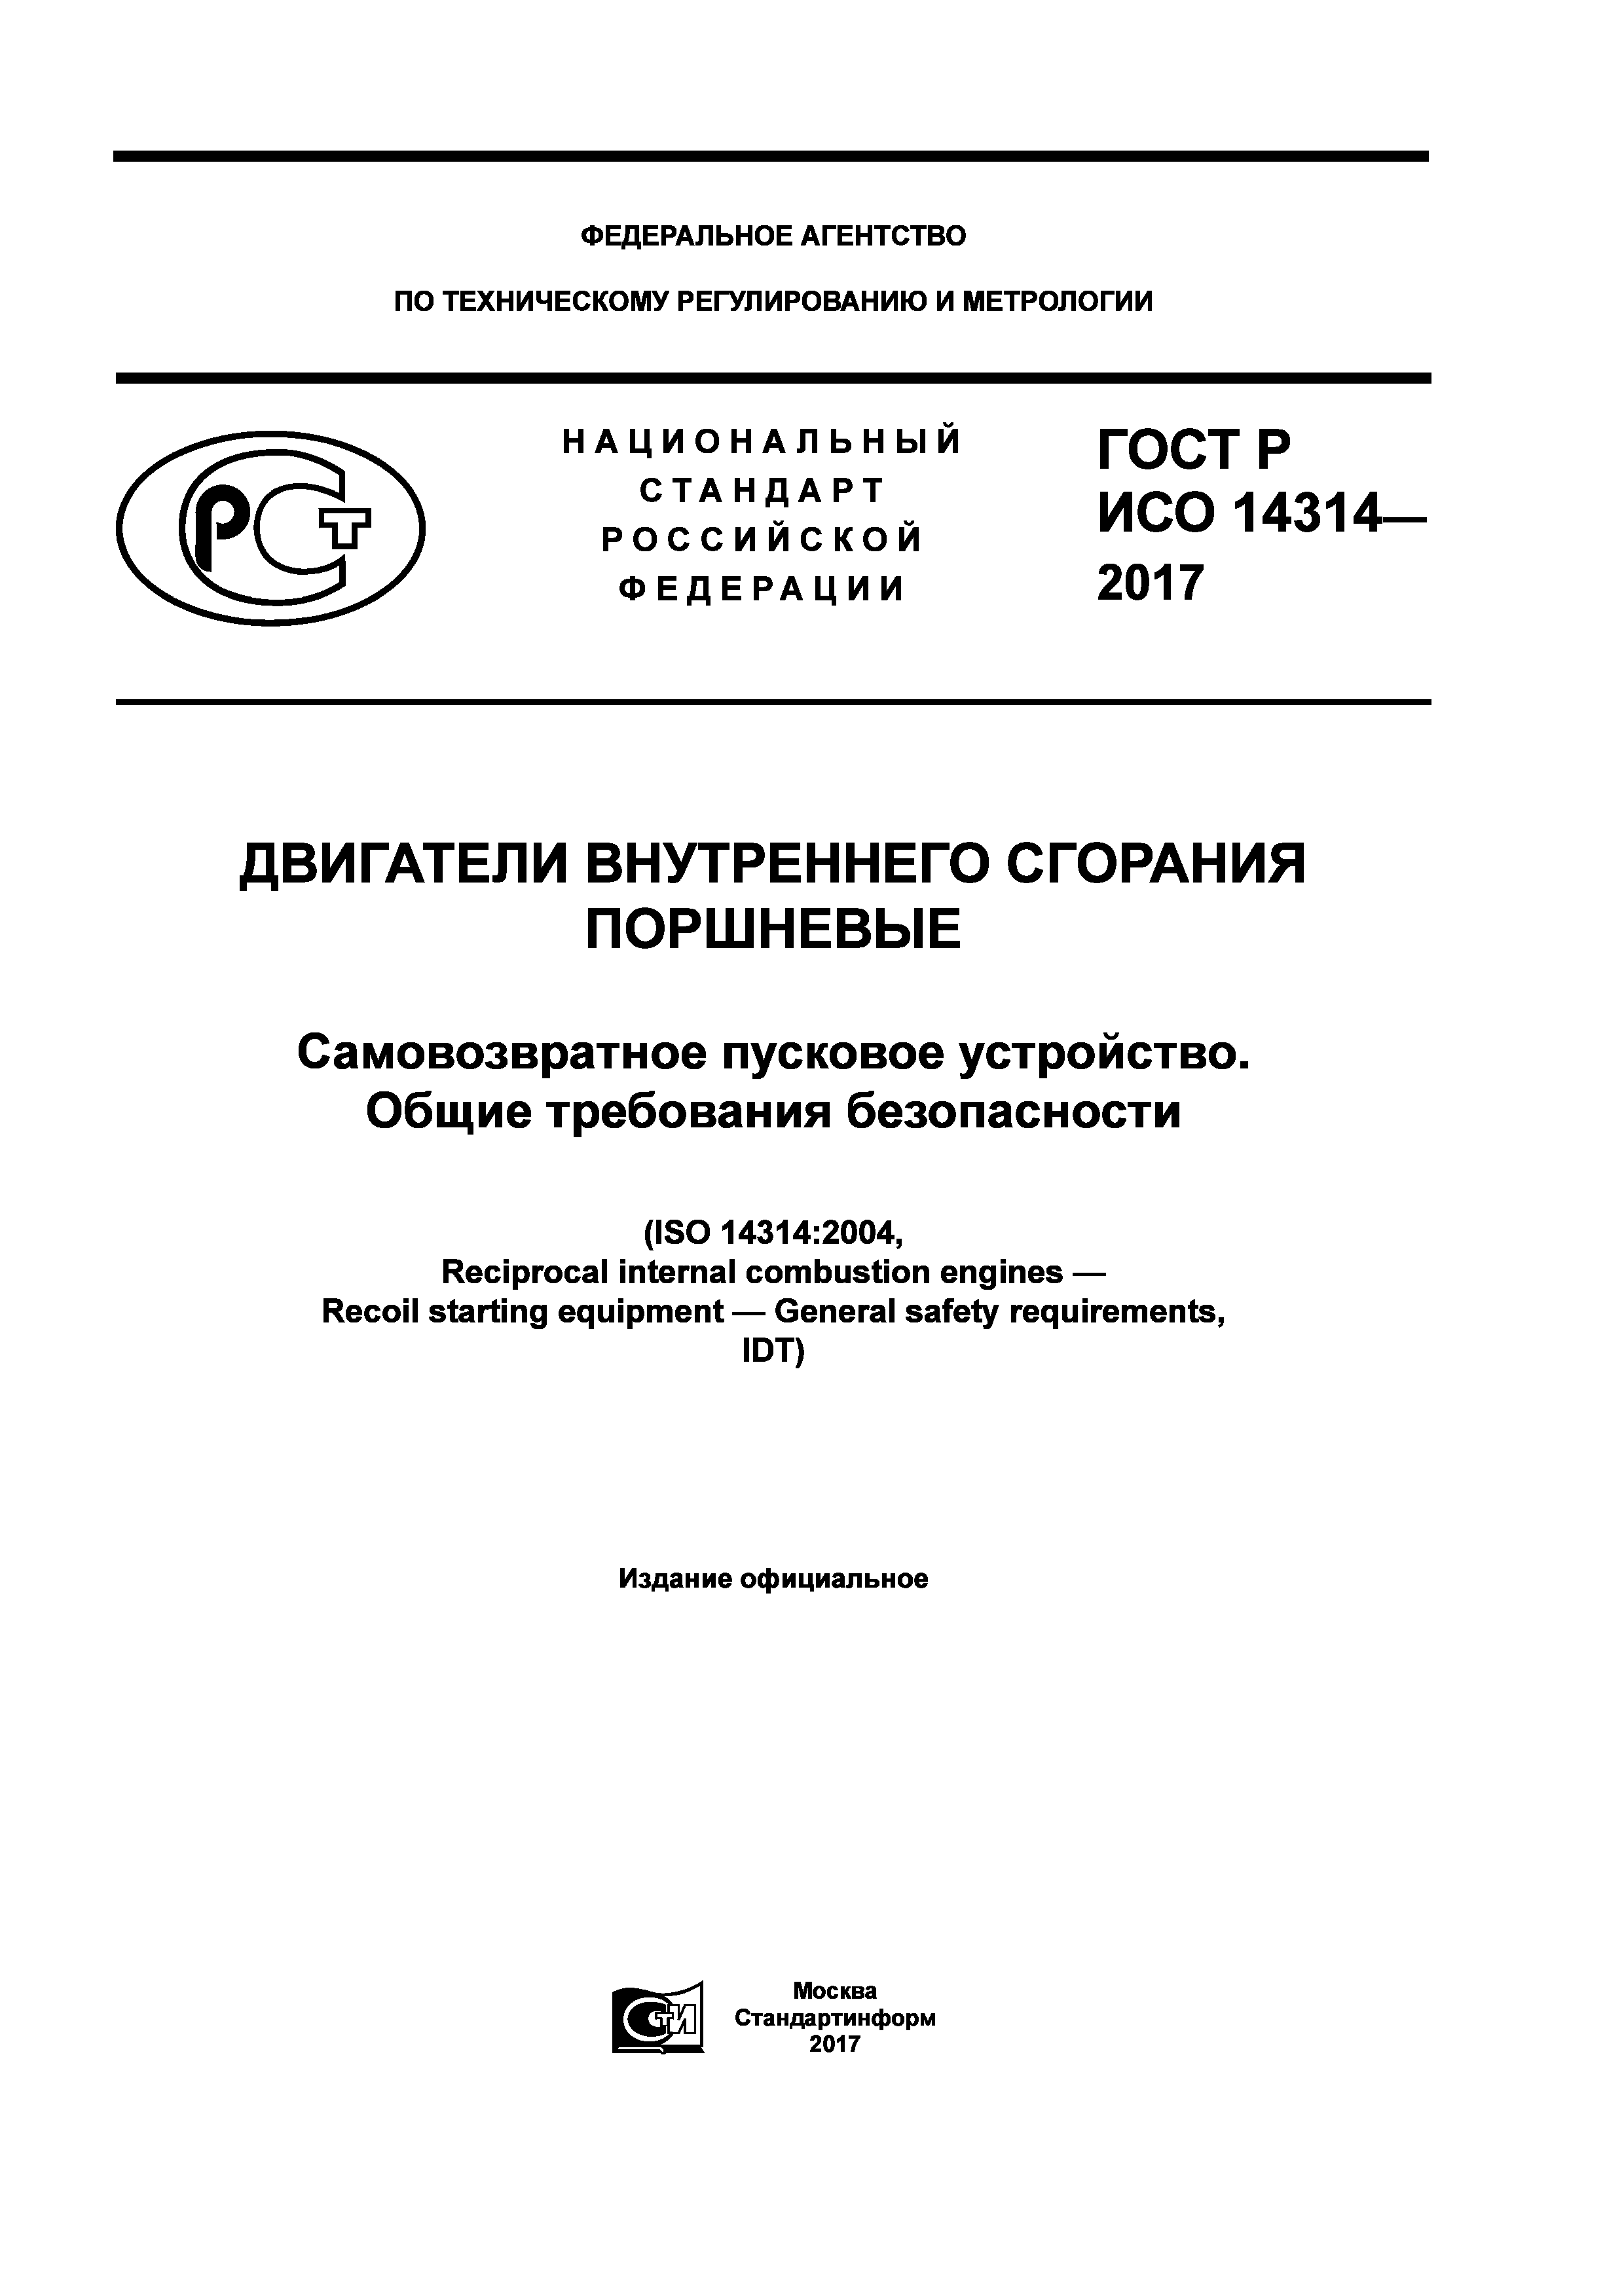 ГОСТ Р ИСО 14314-2017